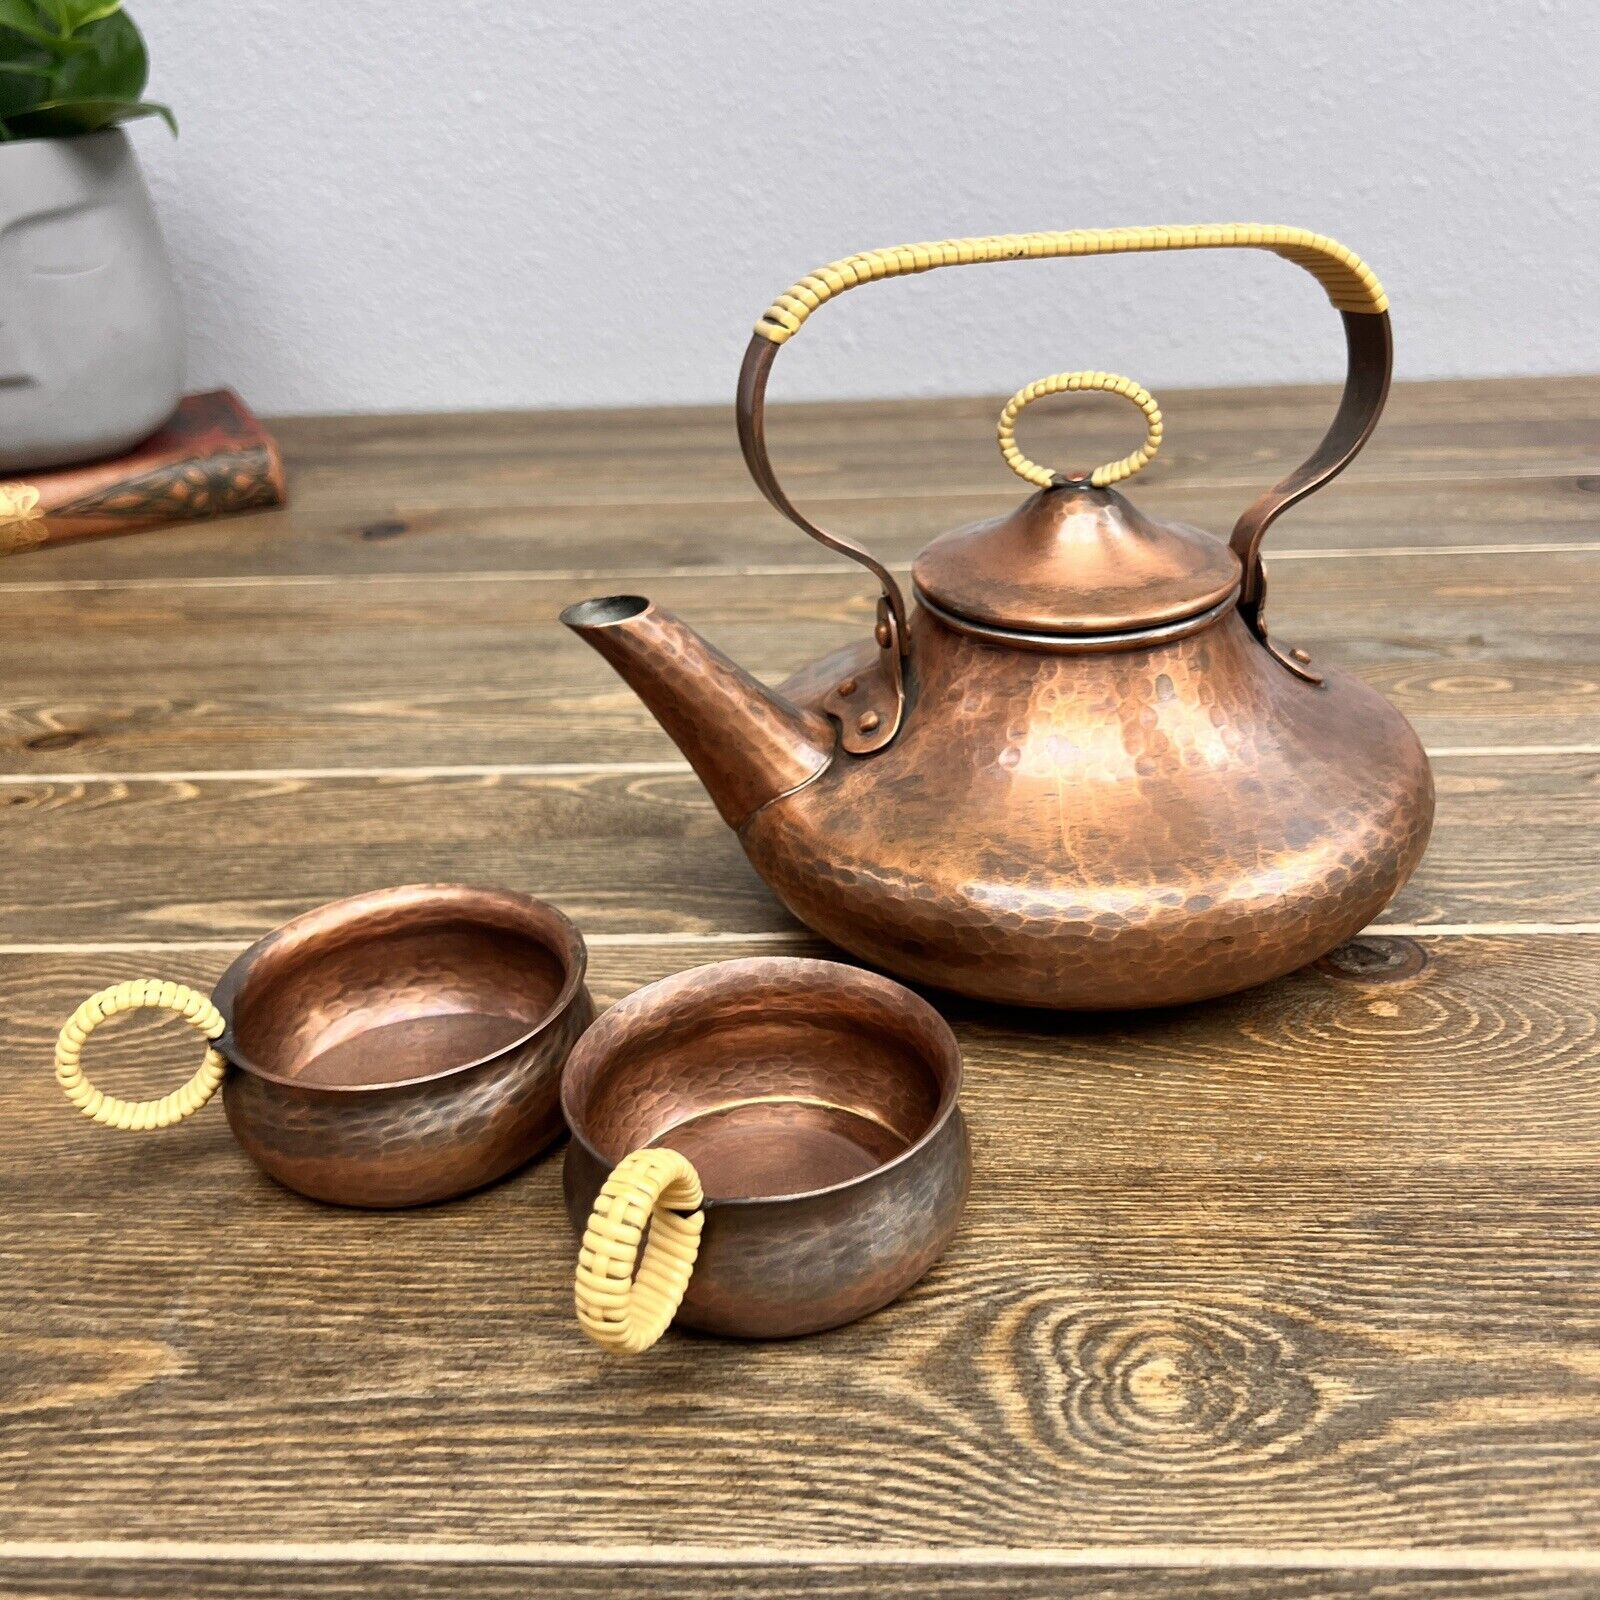 Vintage German Zint Handarbeit Hammered Copper Tea Kettle With Wicker Handle  &